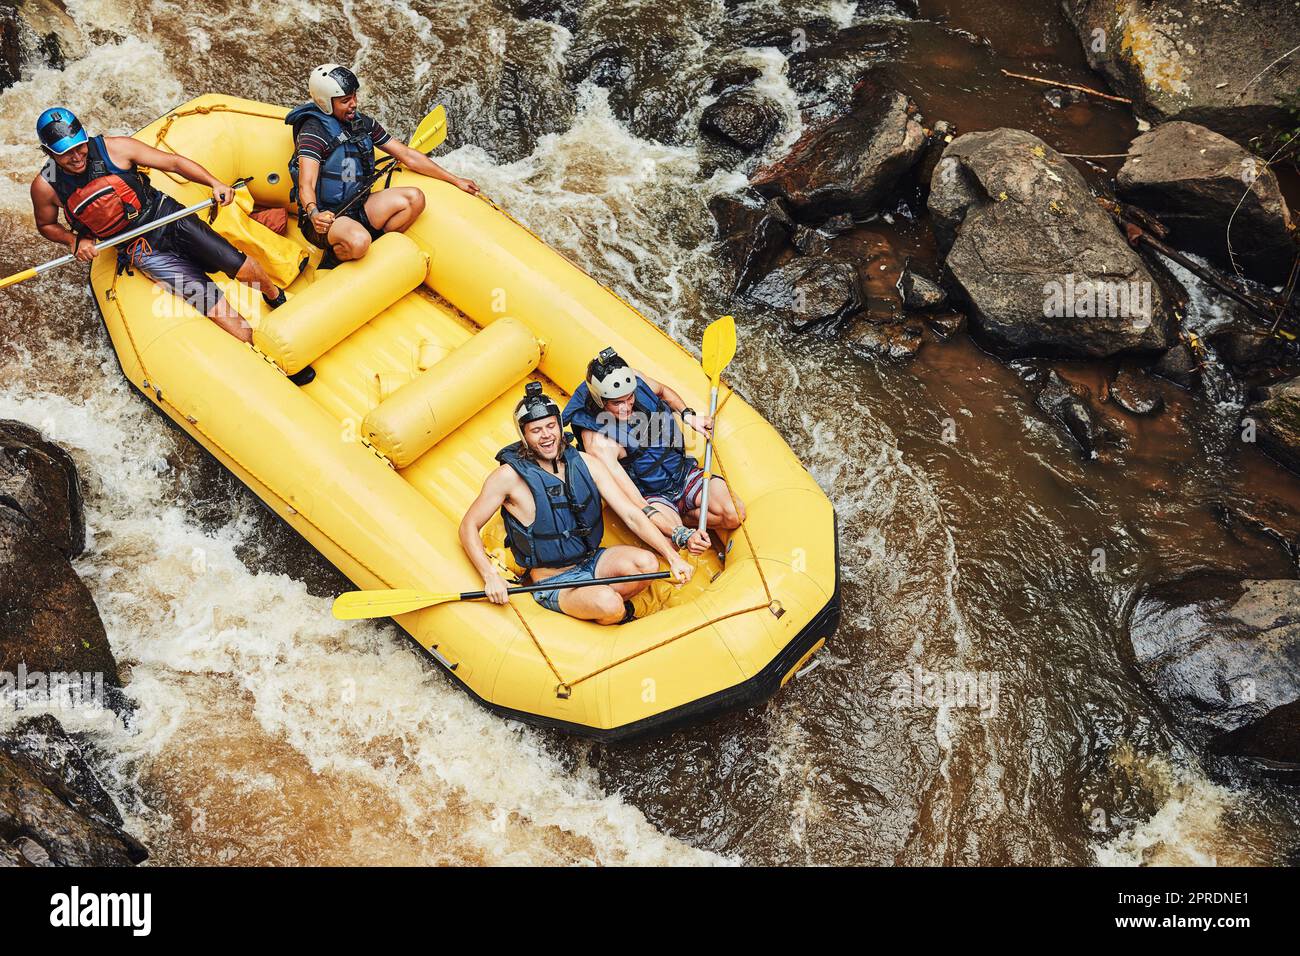 Rischiare e sconfiggere le tue paure. Un gruppo di amici rafting su fiume in una giornata di sole. Foto Stock